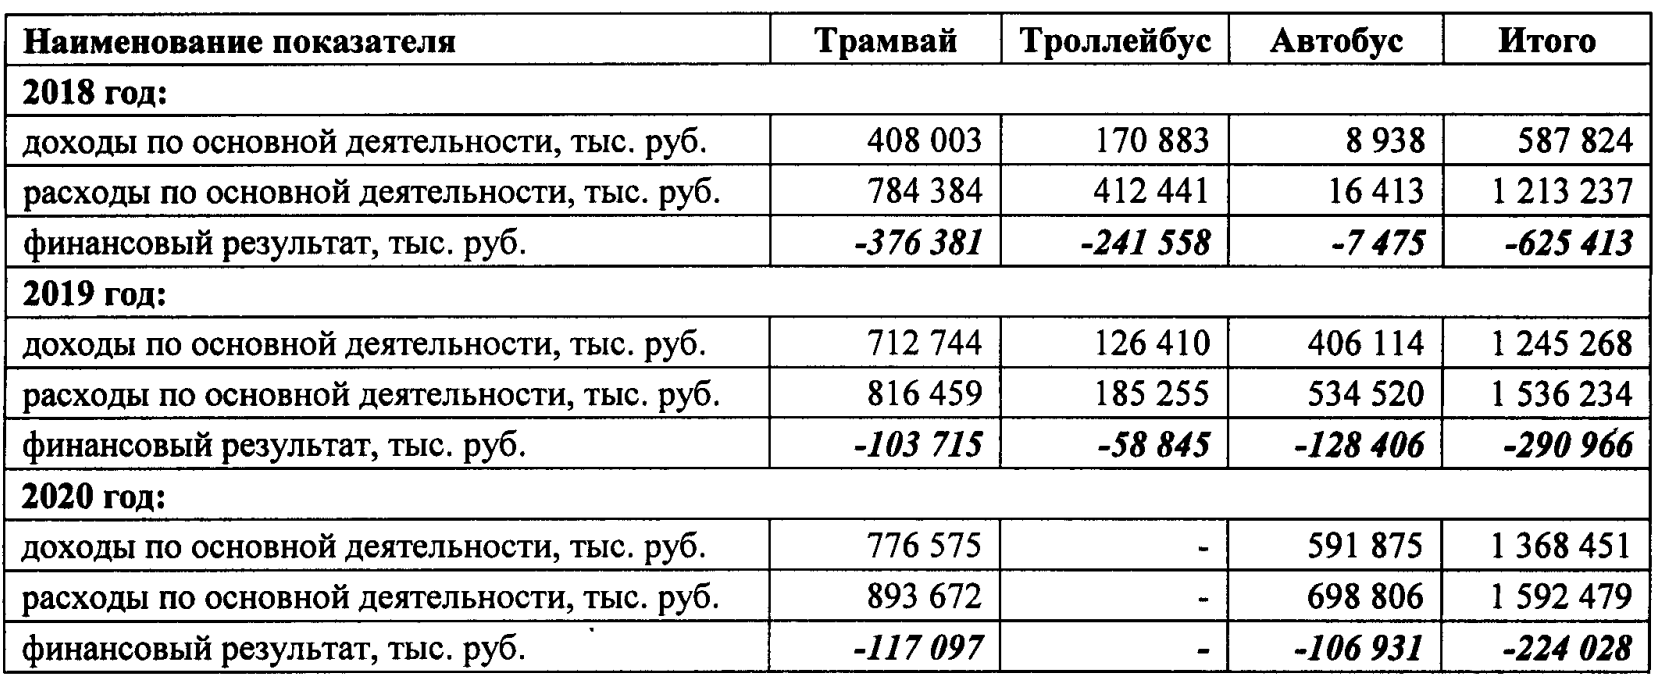 Расходы общественного транспорта Перми превысили доходы на 224 млн руб.